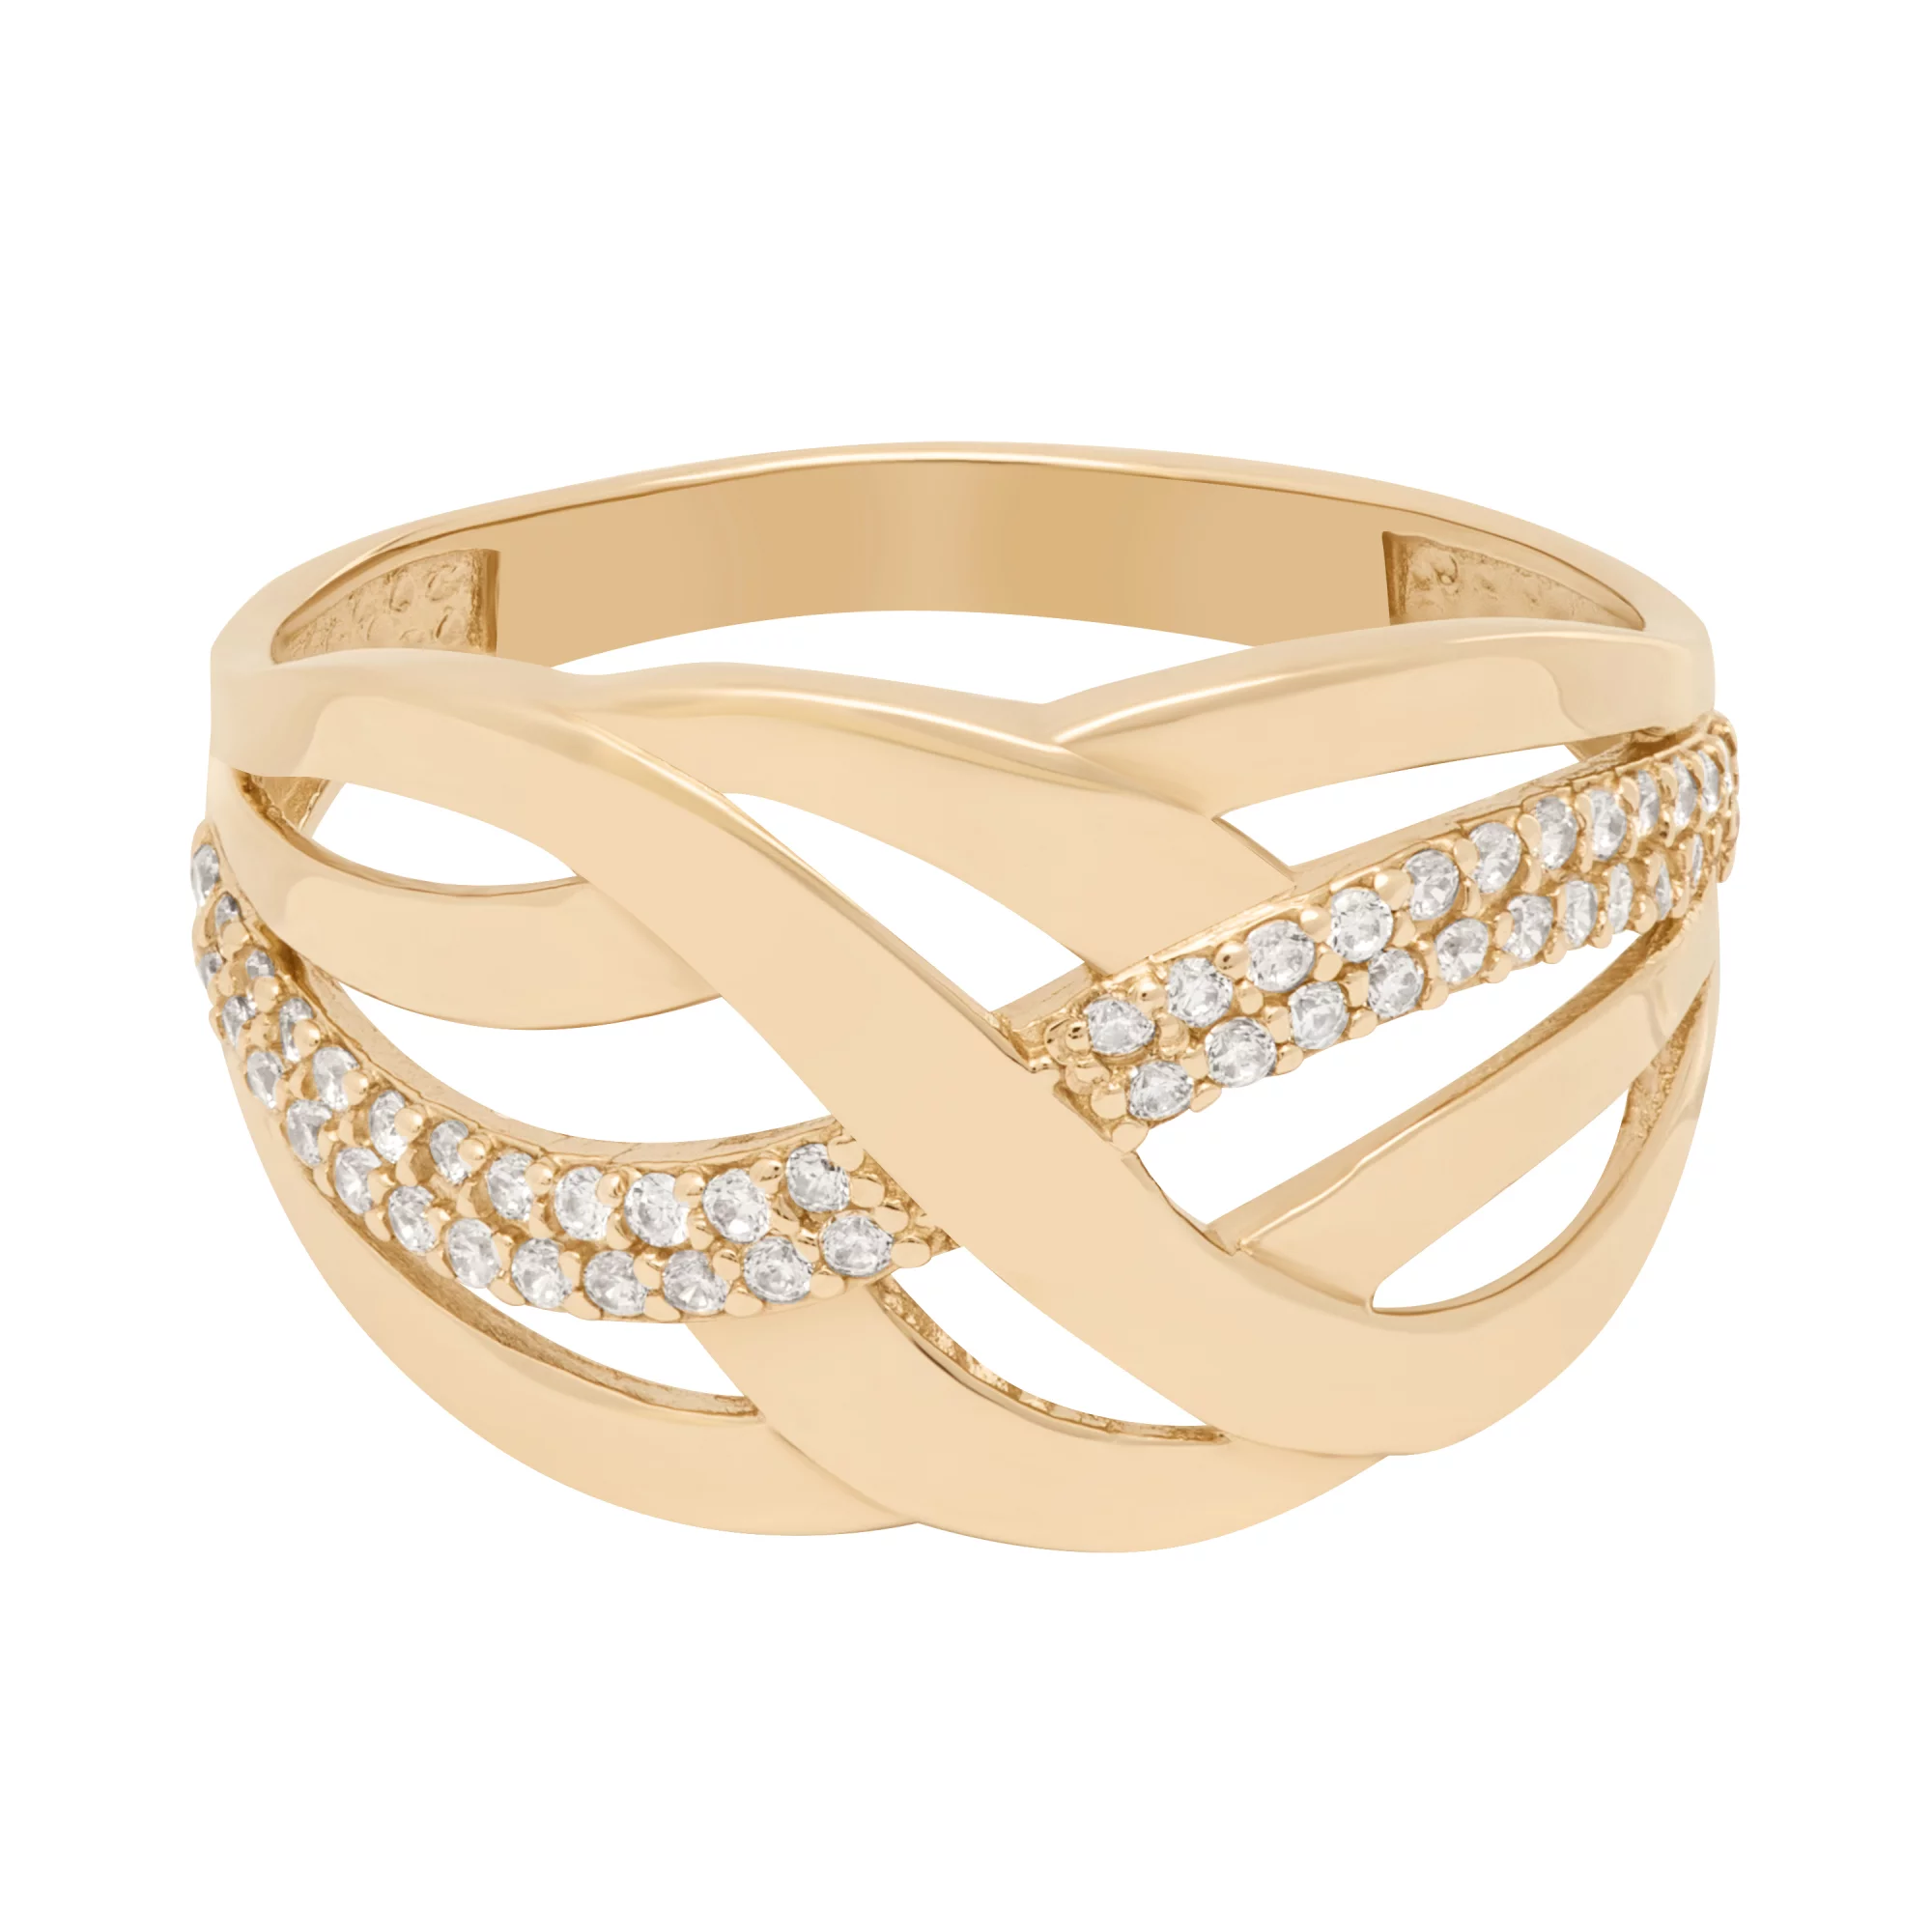 Широкое золотое кольцо с фианитами "Переплетение" - 1640055 – изображение 2